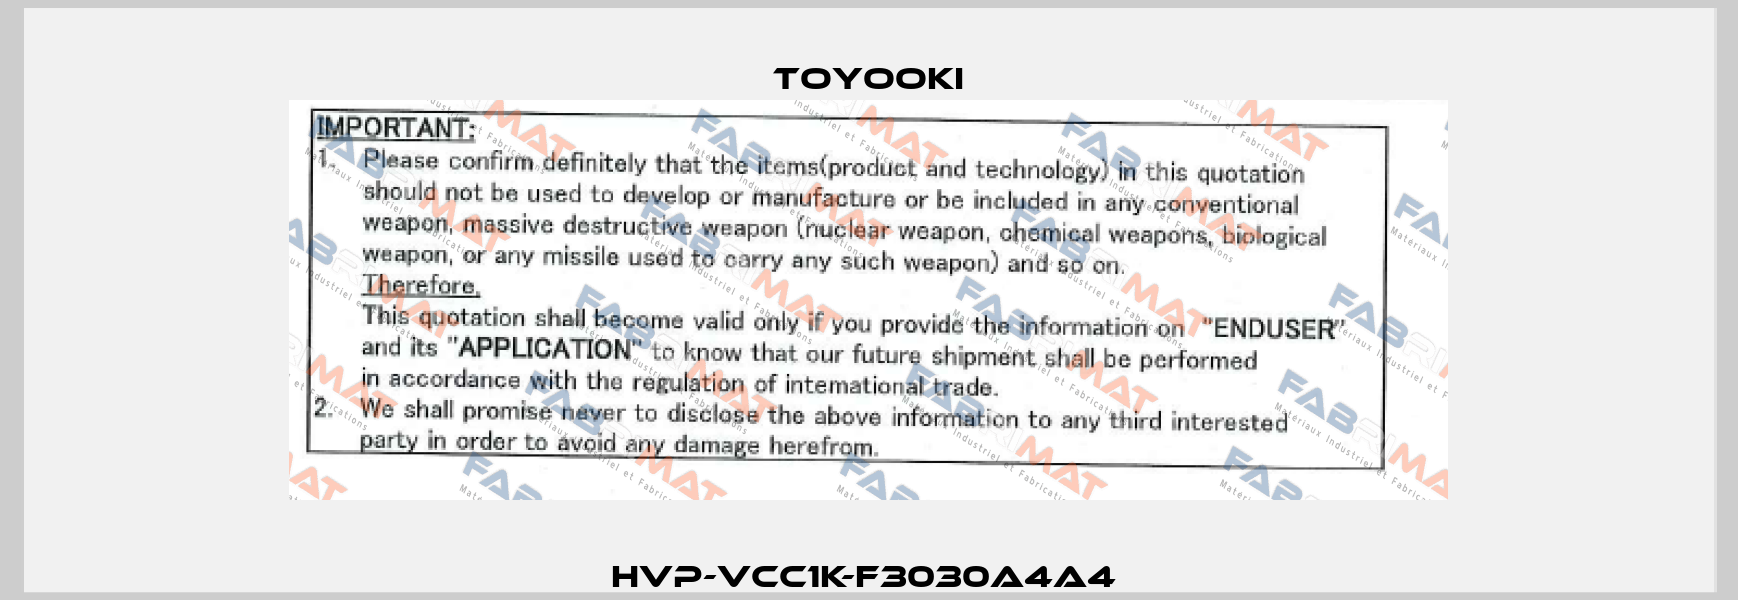 HVP-VCC1K-F3030A4A4  Toyooki